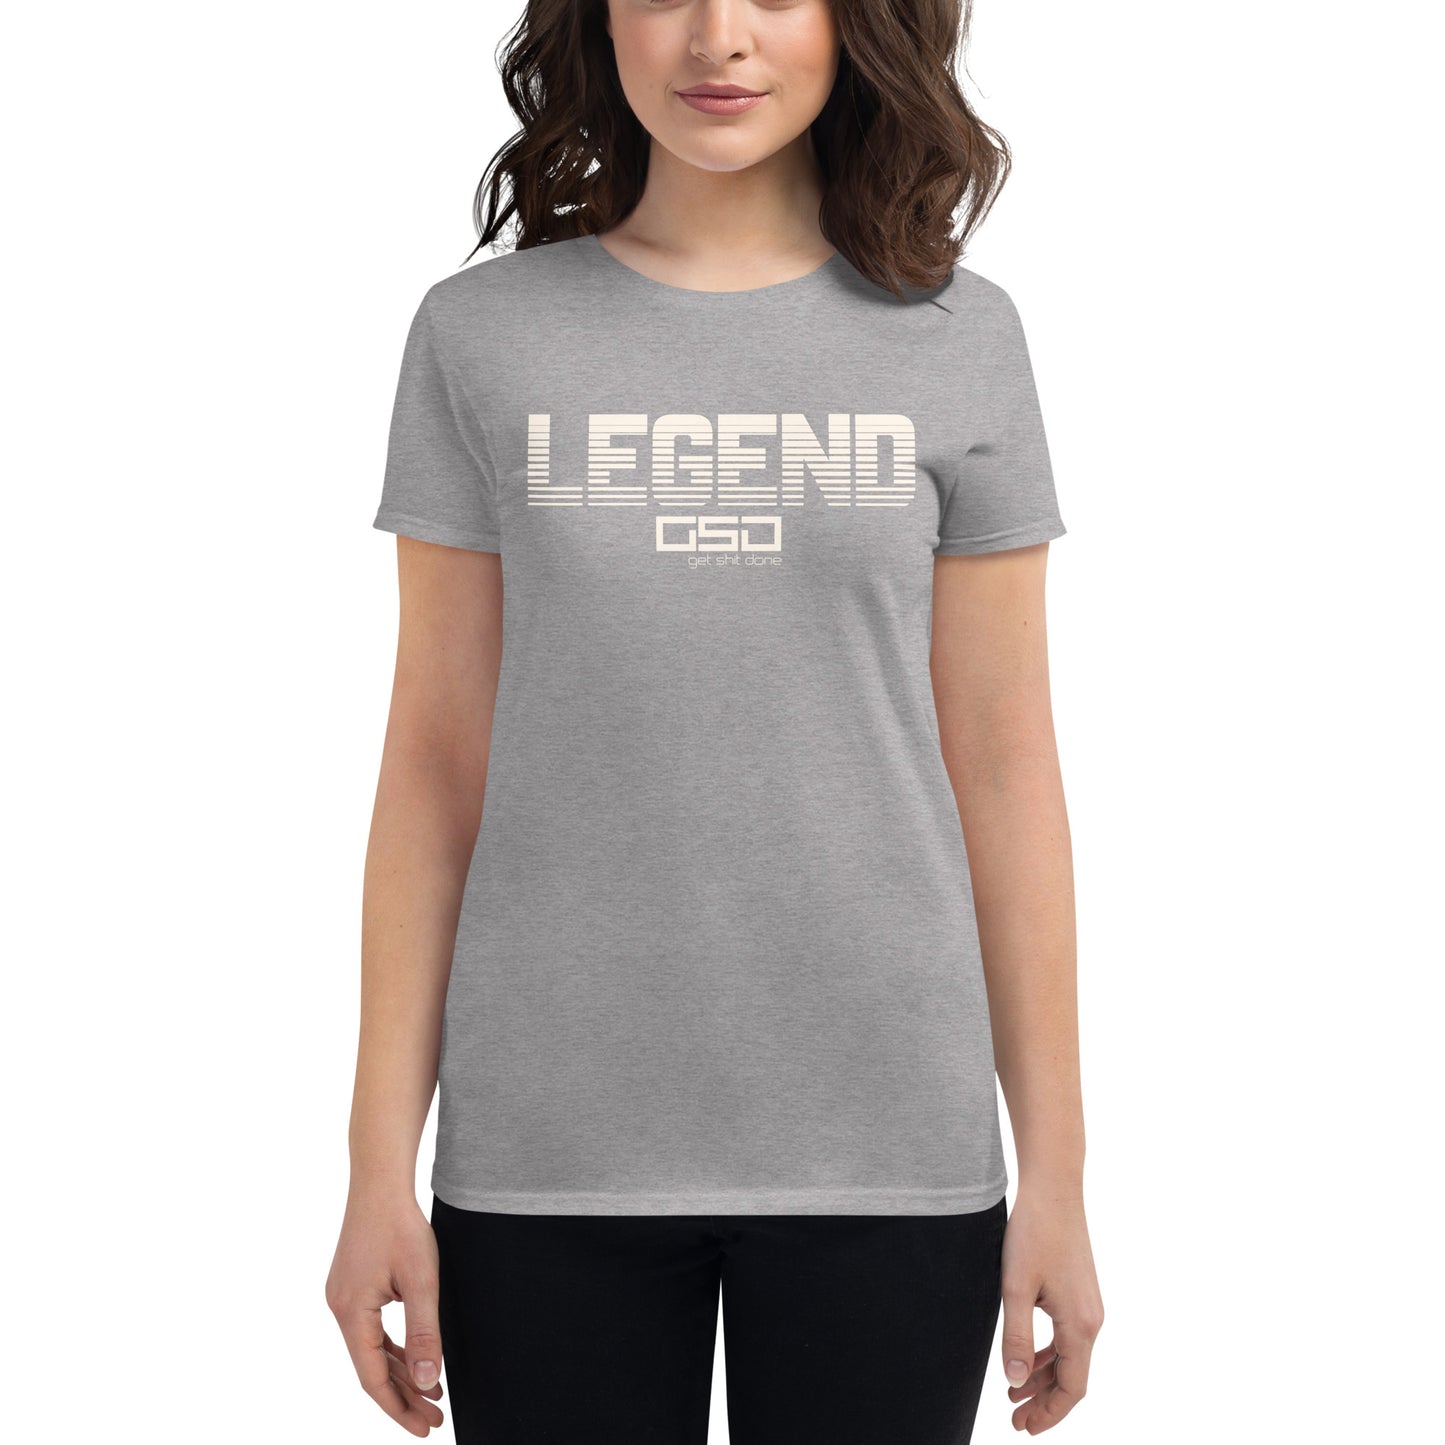 LEGEND-Women's short sleeve t-shirt